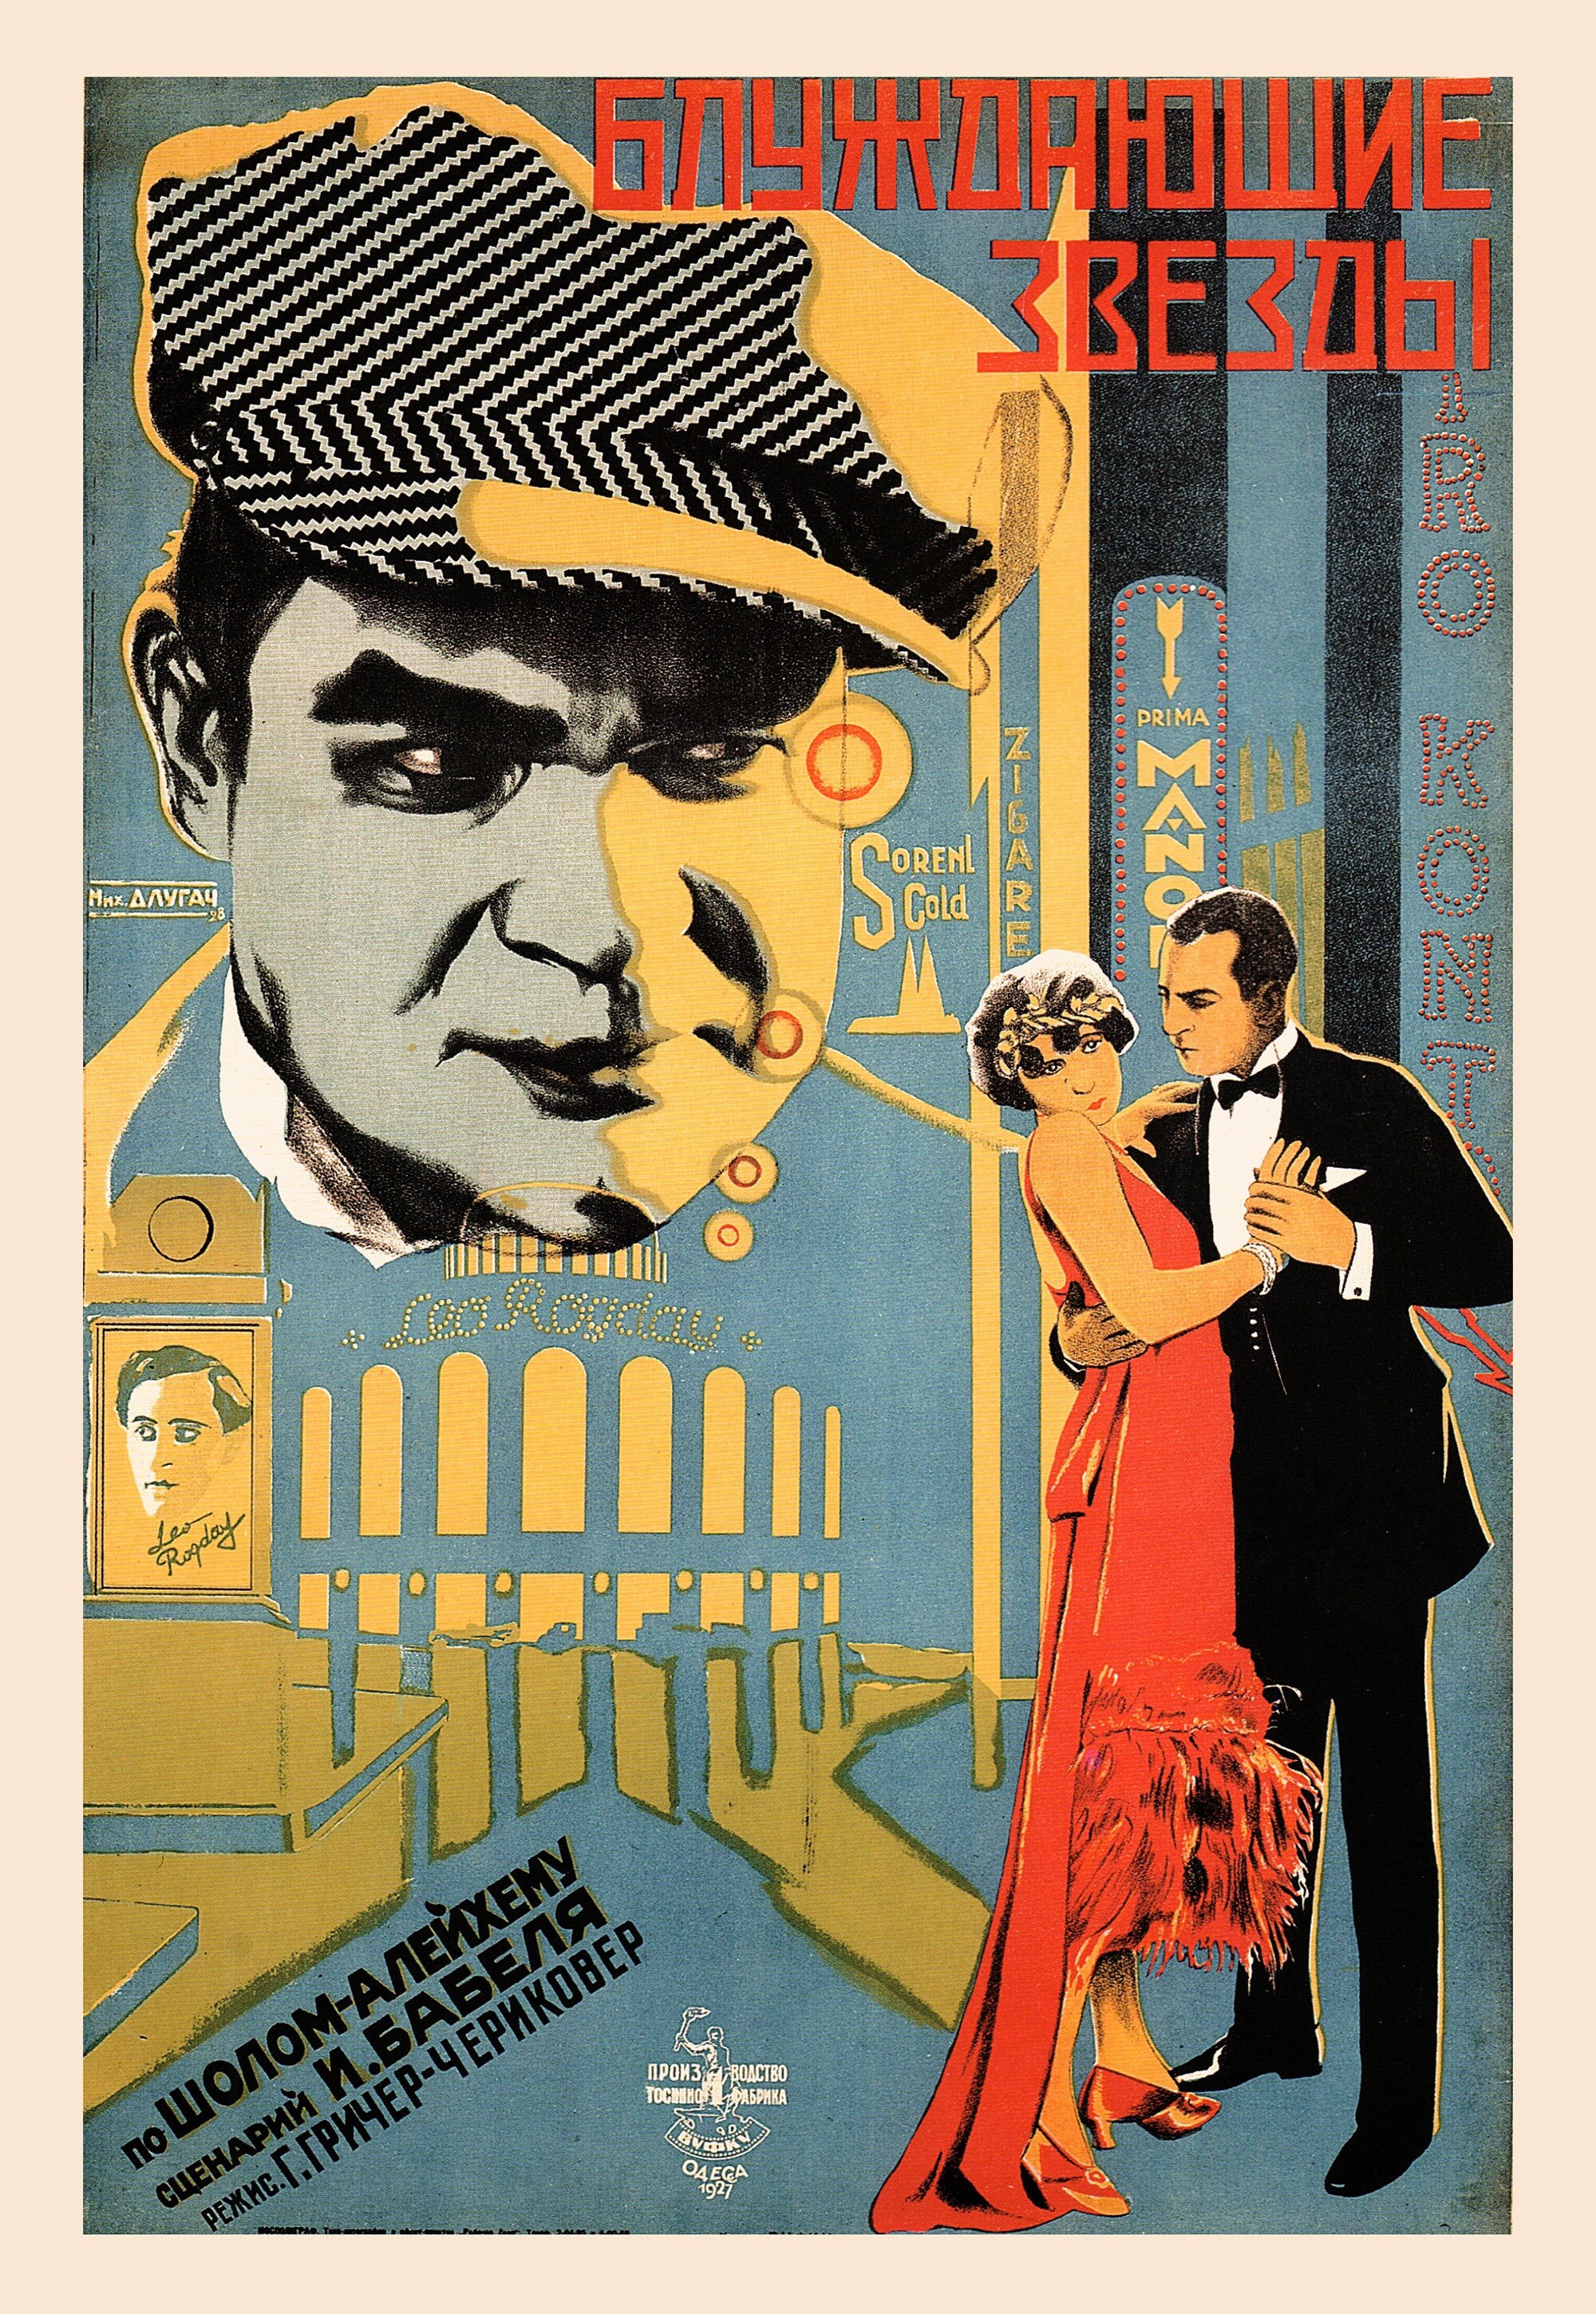 Блуждающие звезды, 1926 год, режиссёр Г. Гричер-Чериковер, плакат к фильму, автор Михаил Длугач (авангардное советское искусство, 1920-е)